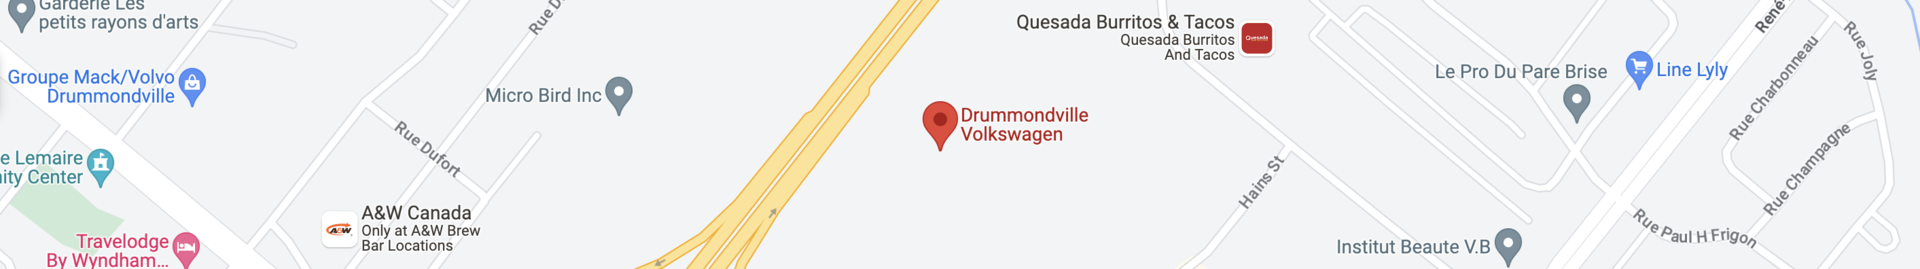 Drummondville Volkswagen